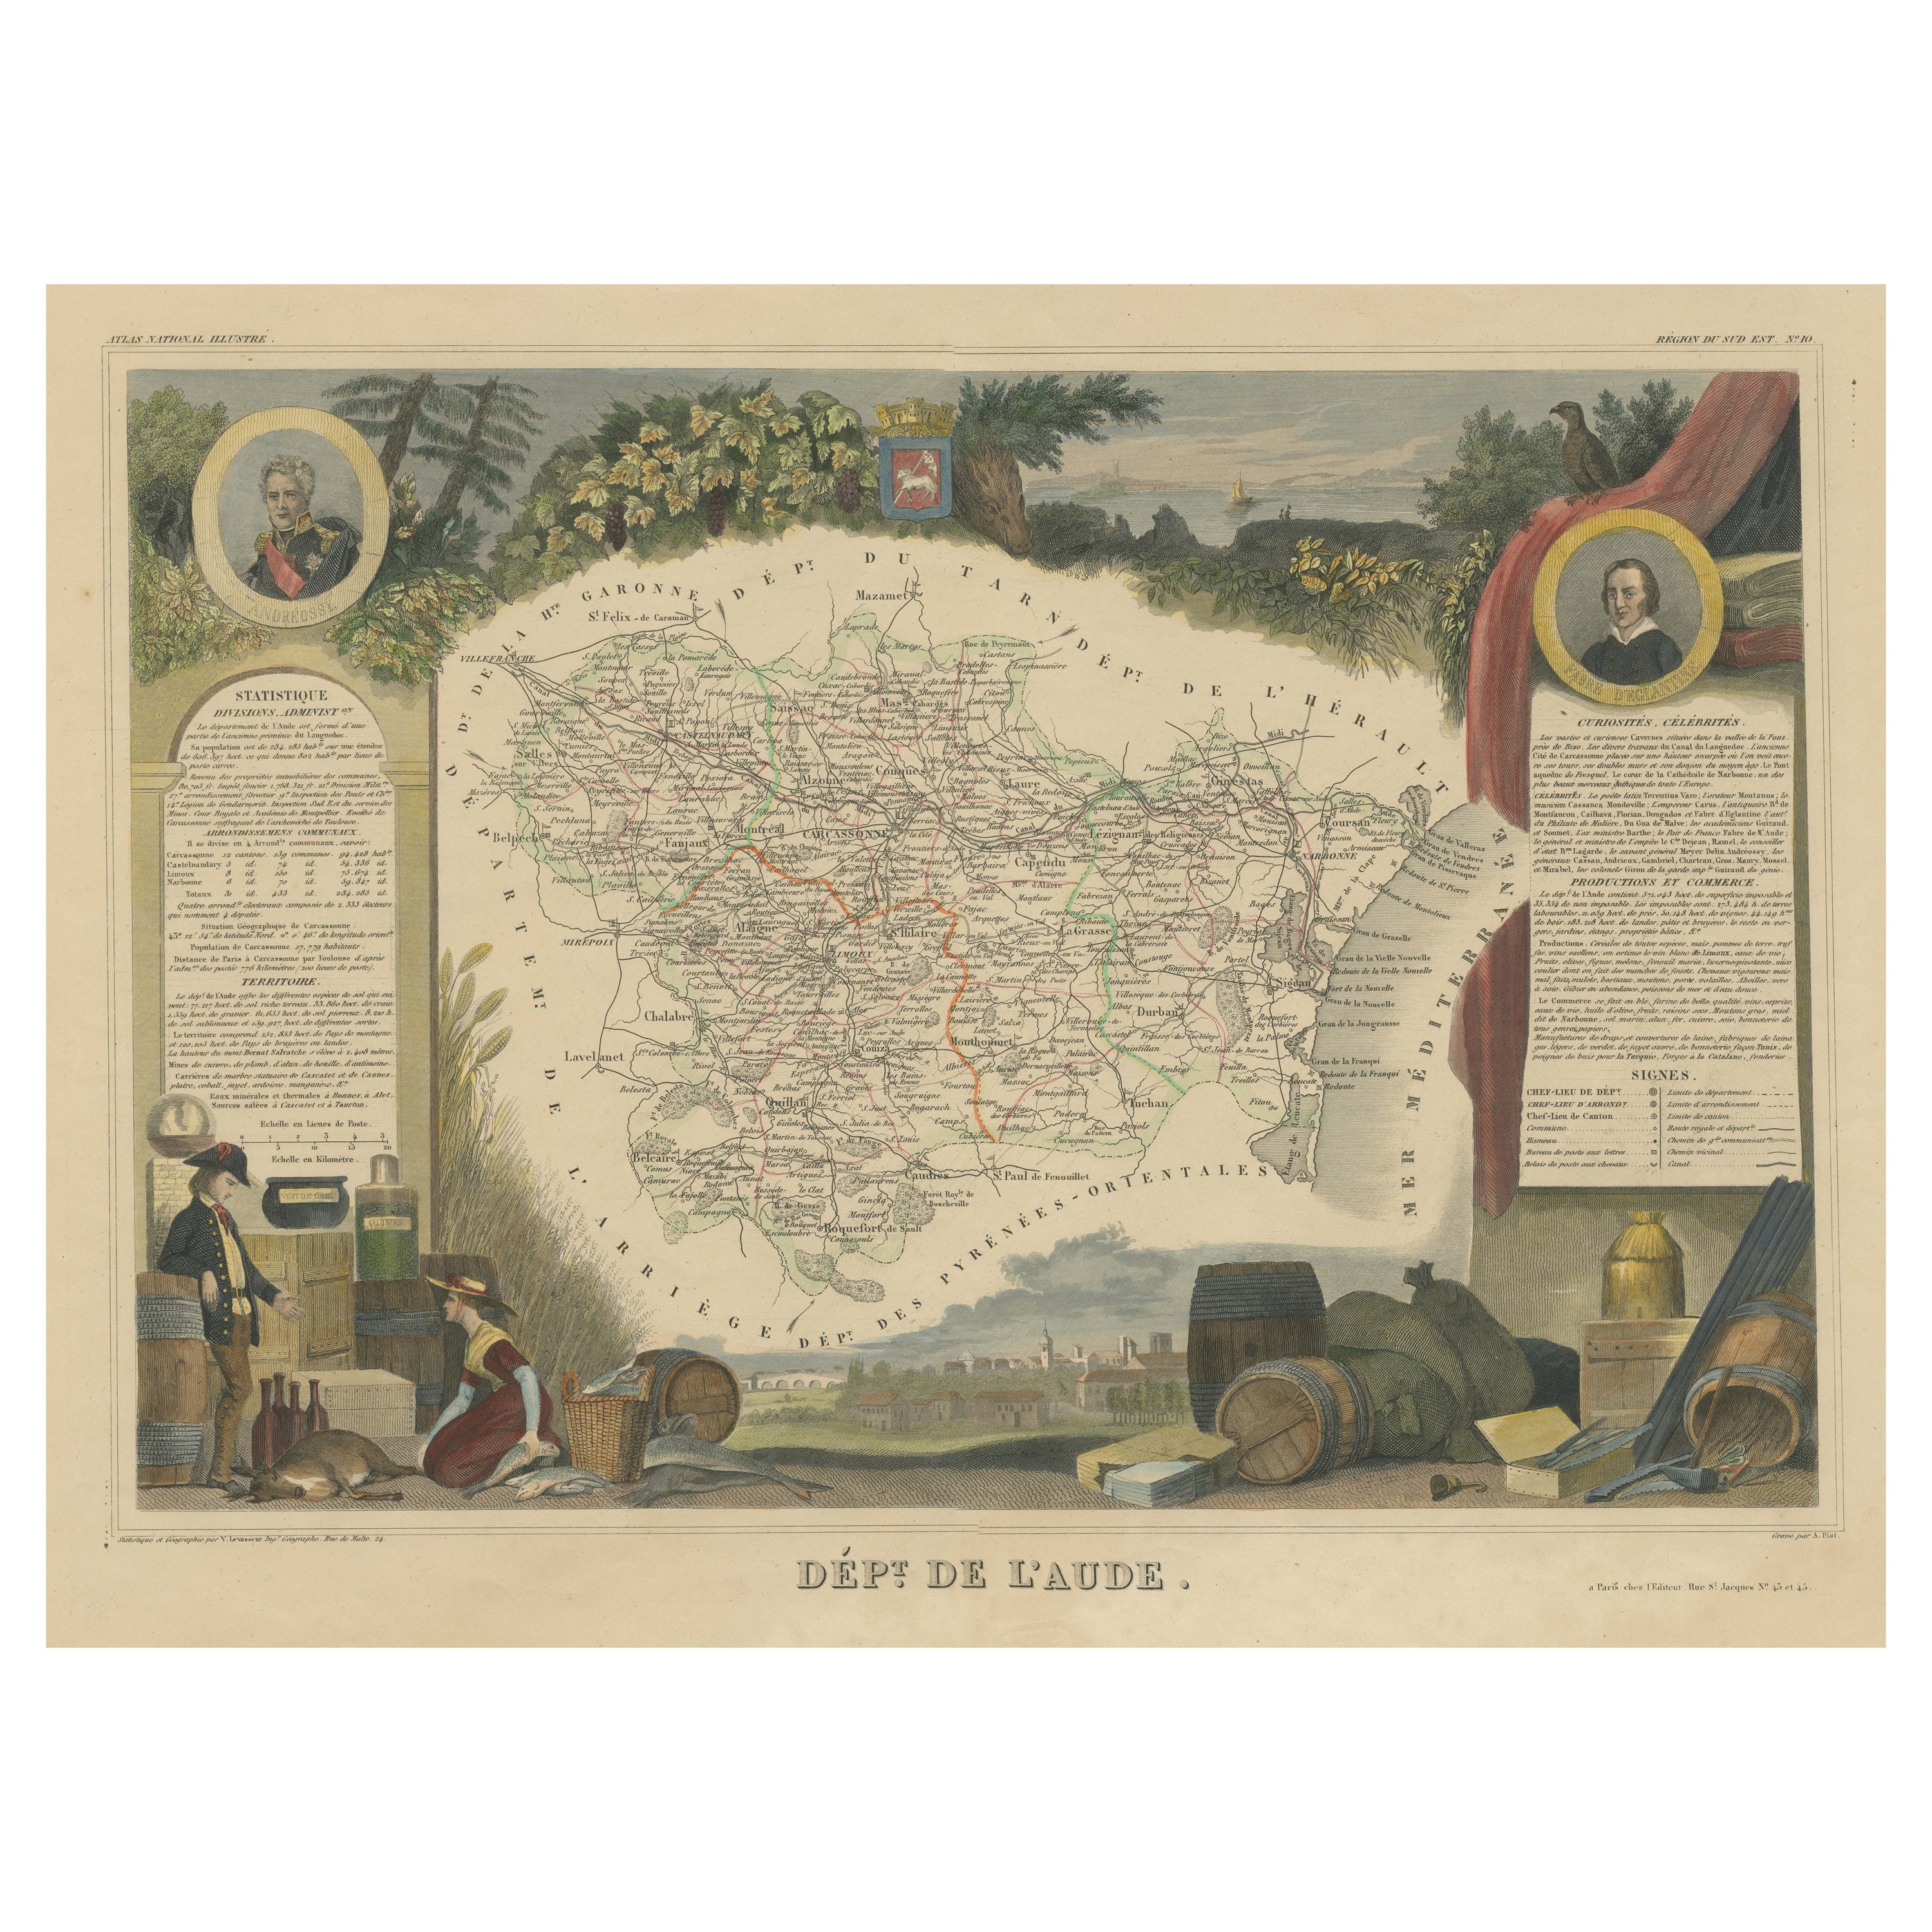 Carte ancienne colorée à la main du département d'Aude, France